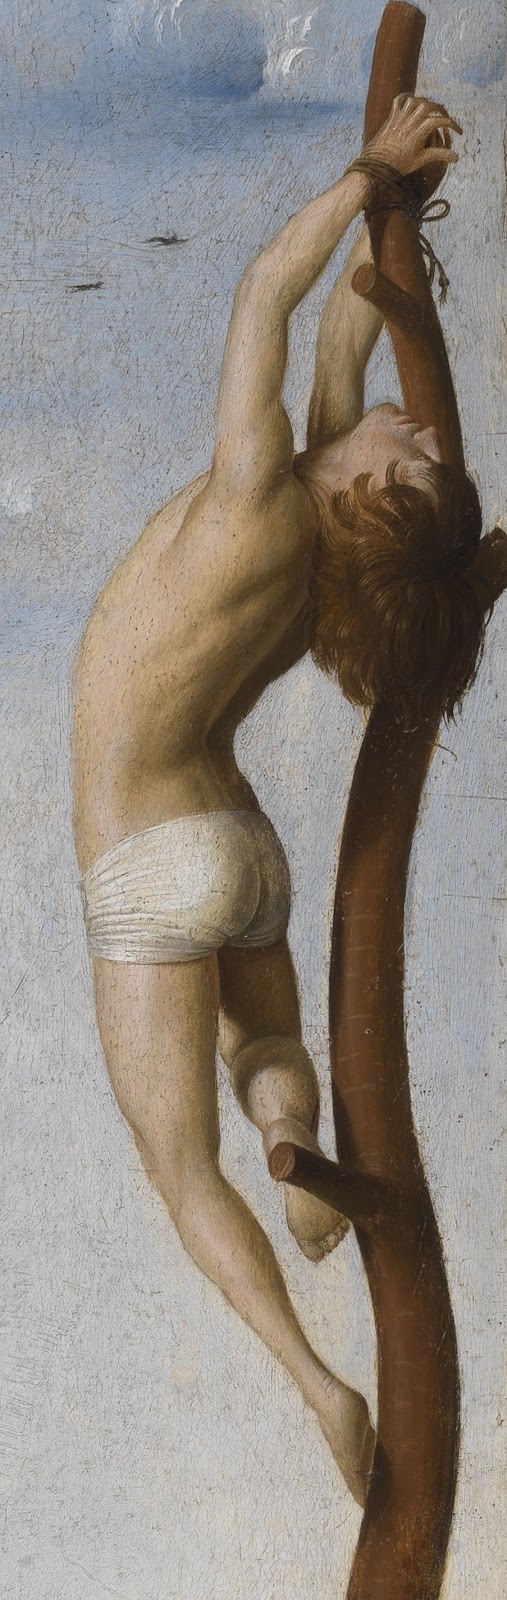 Antonello+da+Messina-1430-1479 (3).jpg